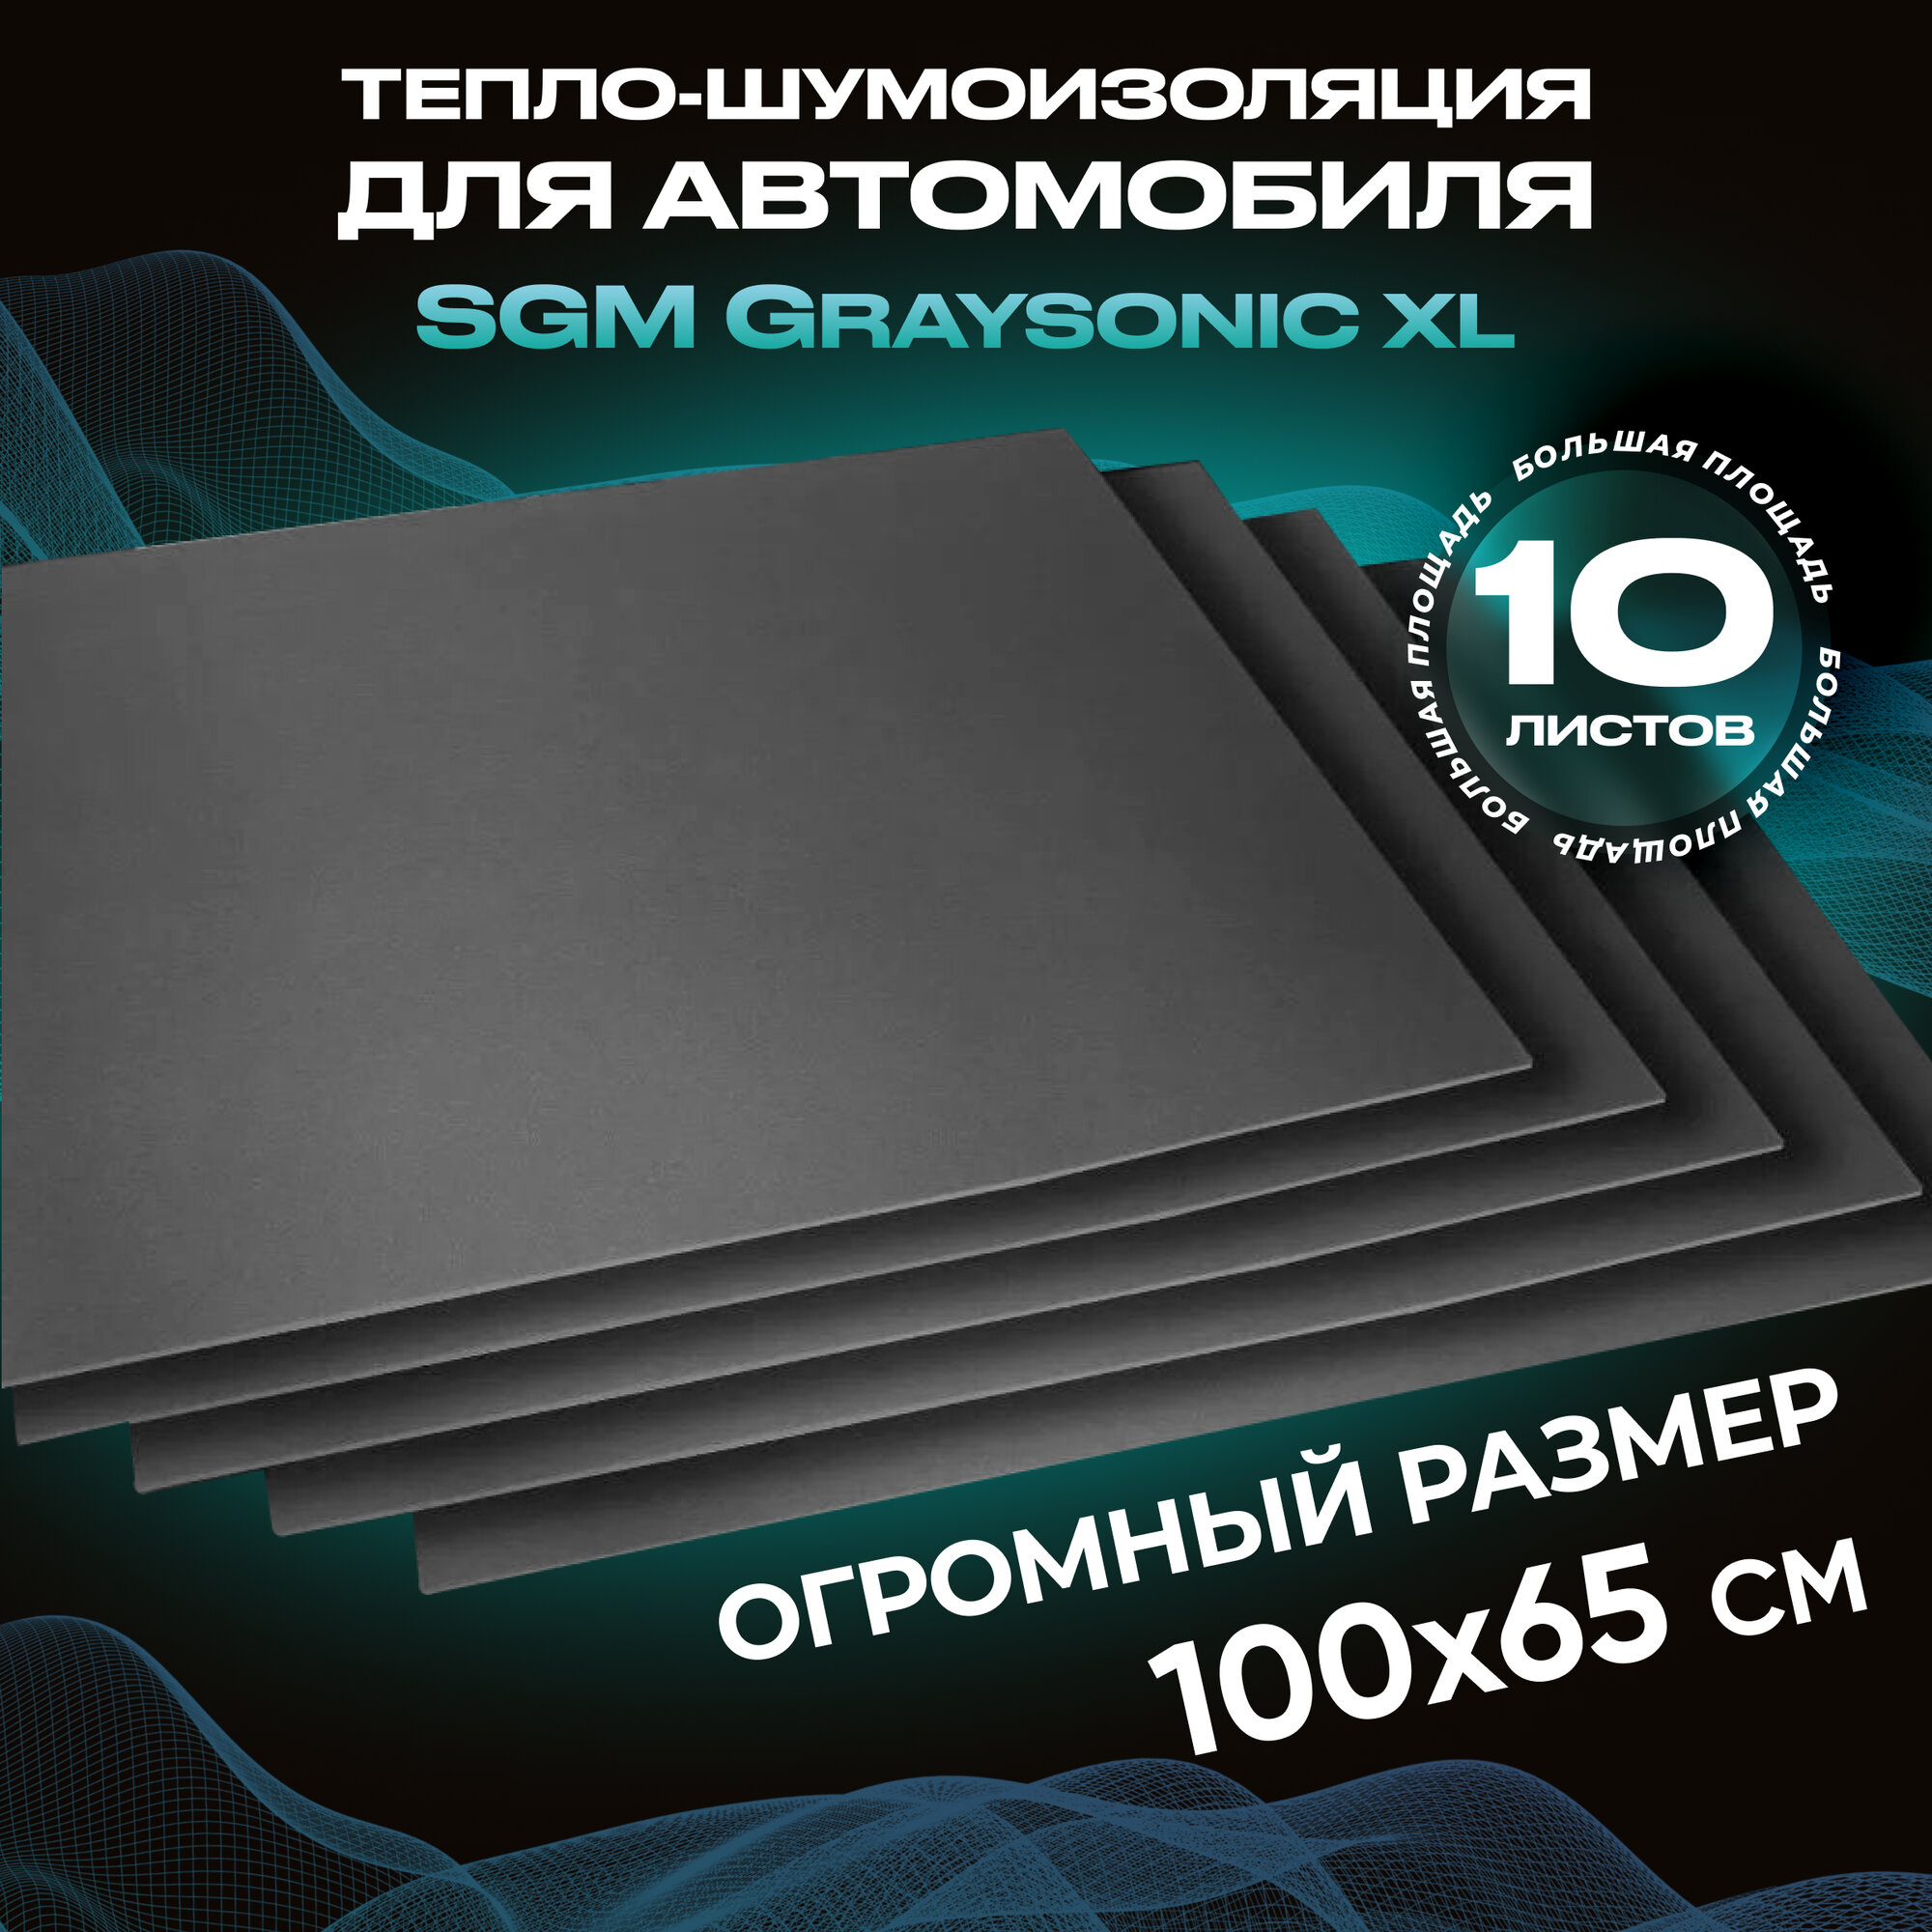 Шумоизоляция для автомобиля SGM Graysonic XL, 10 листов (0.65х1м) /Набор влагостойкой звукоизоляции с теплоизолятором/комплект самоклеящаяся шумка для авто